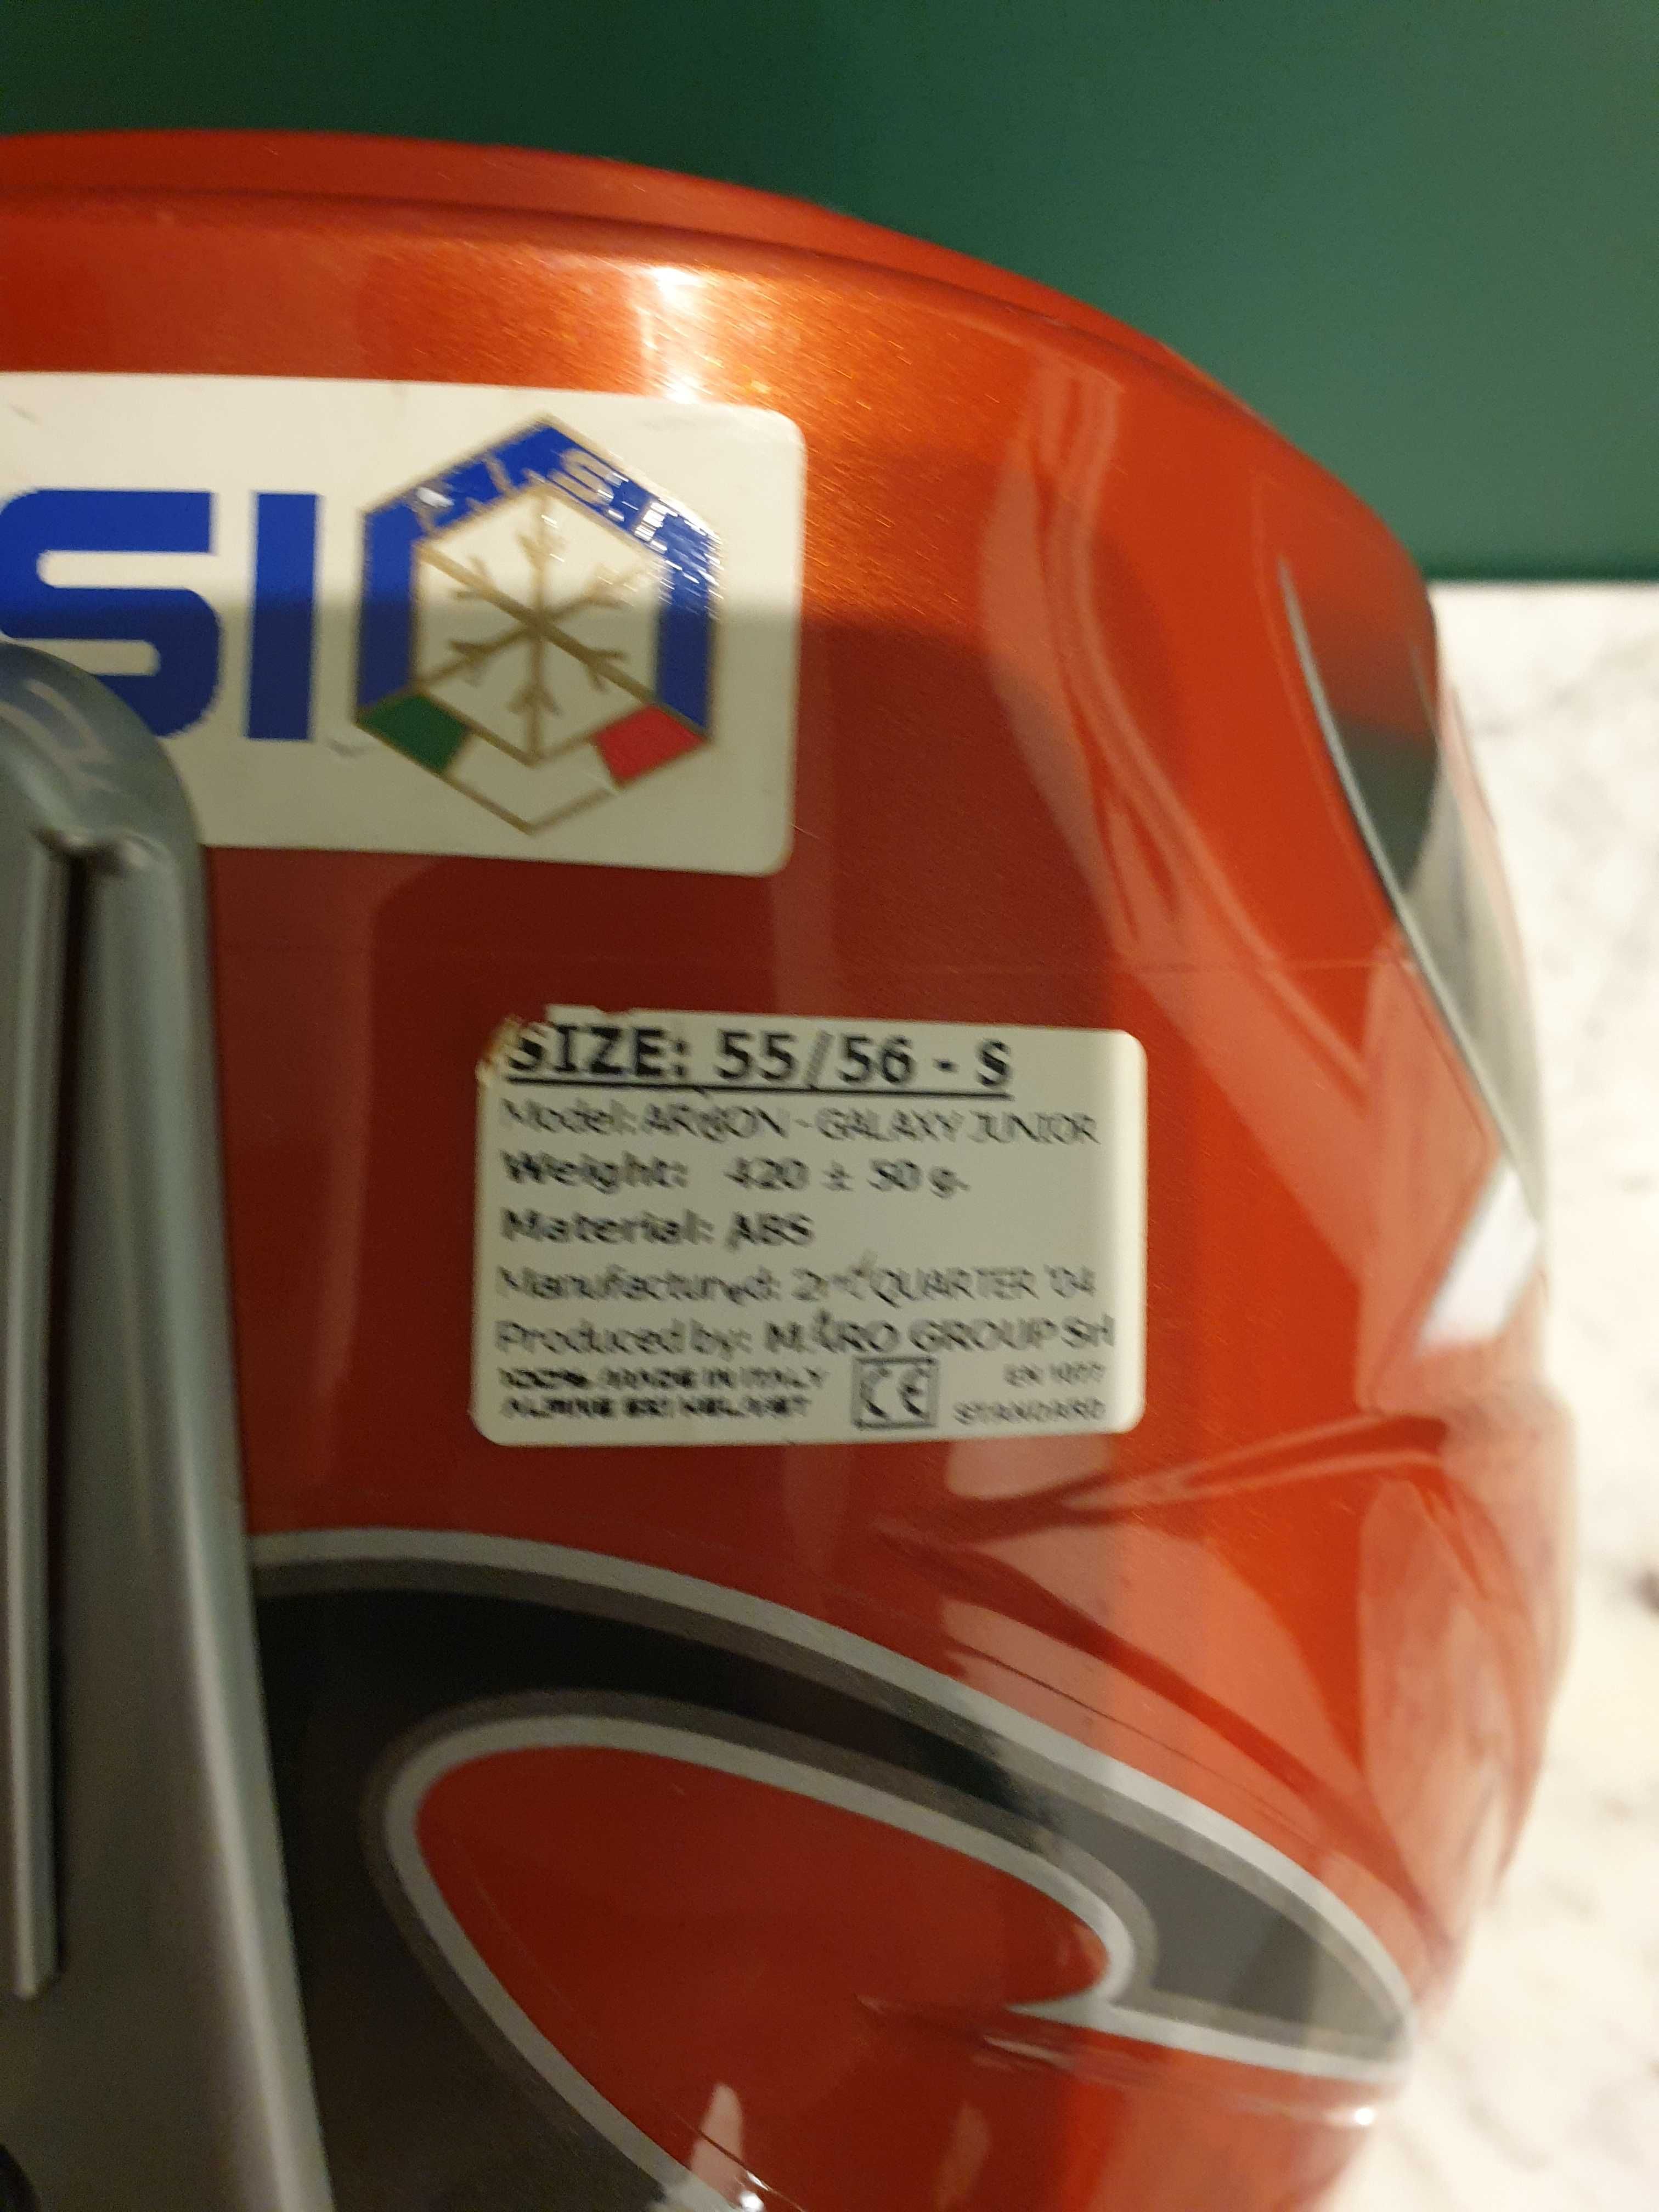 Kask narciarski marki SH+  - rozmiar 55/56S - stan idelany